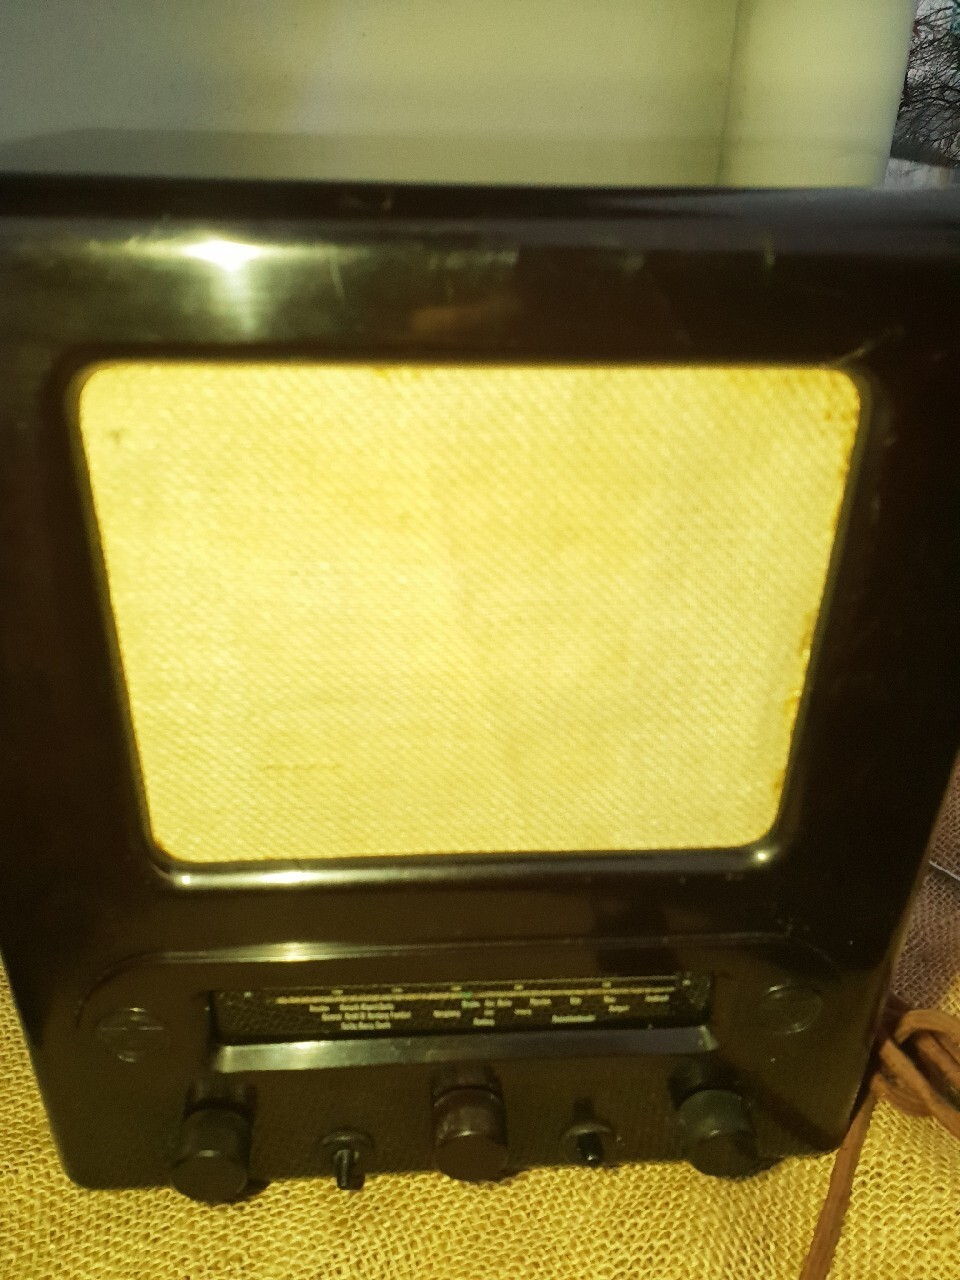 Stare radio lampowe VE301 Dyn III Rzesza | Tyczyn | Kup teraz Allegro